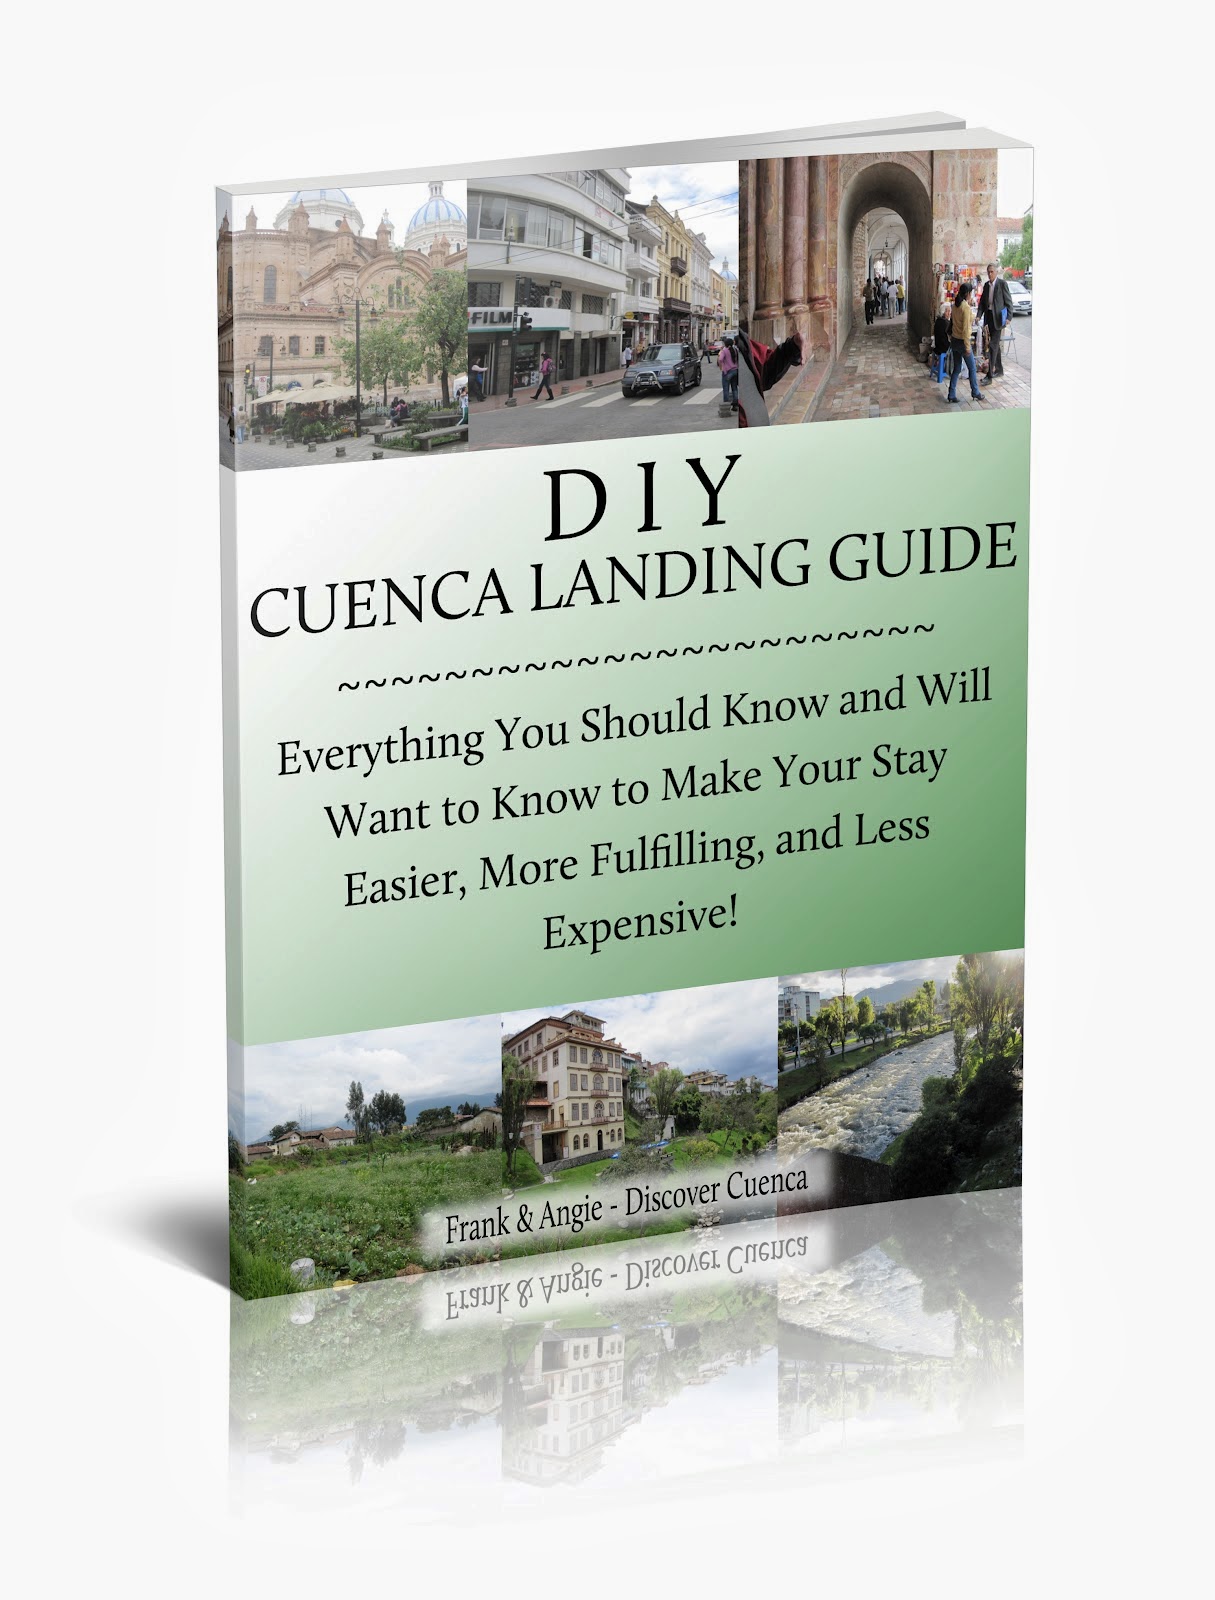 http://www.discovercuencaecuador.com/p/diy-cuenca-landing-guide.html